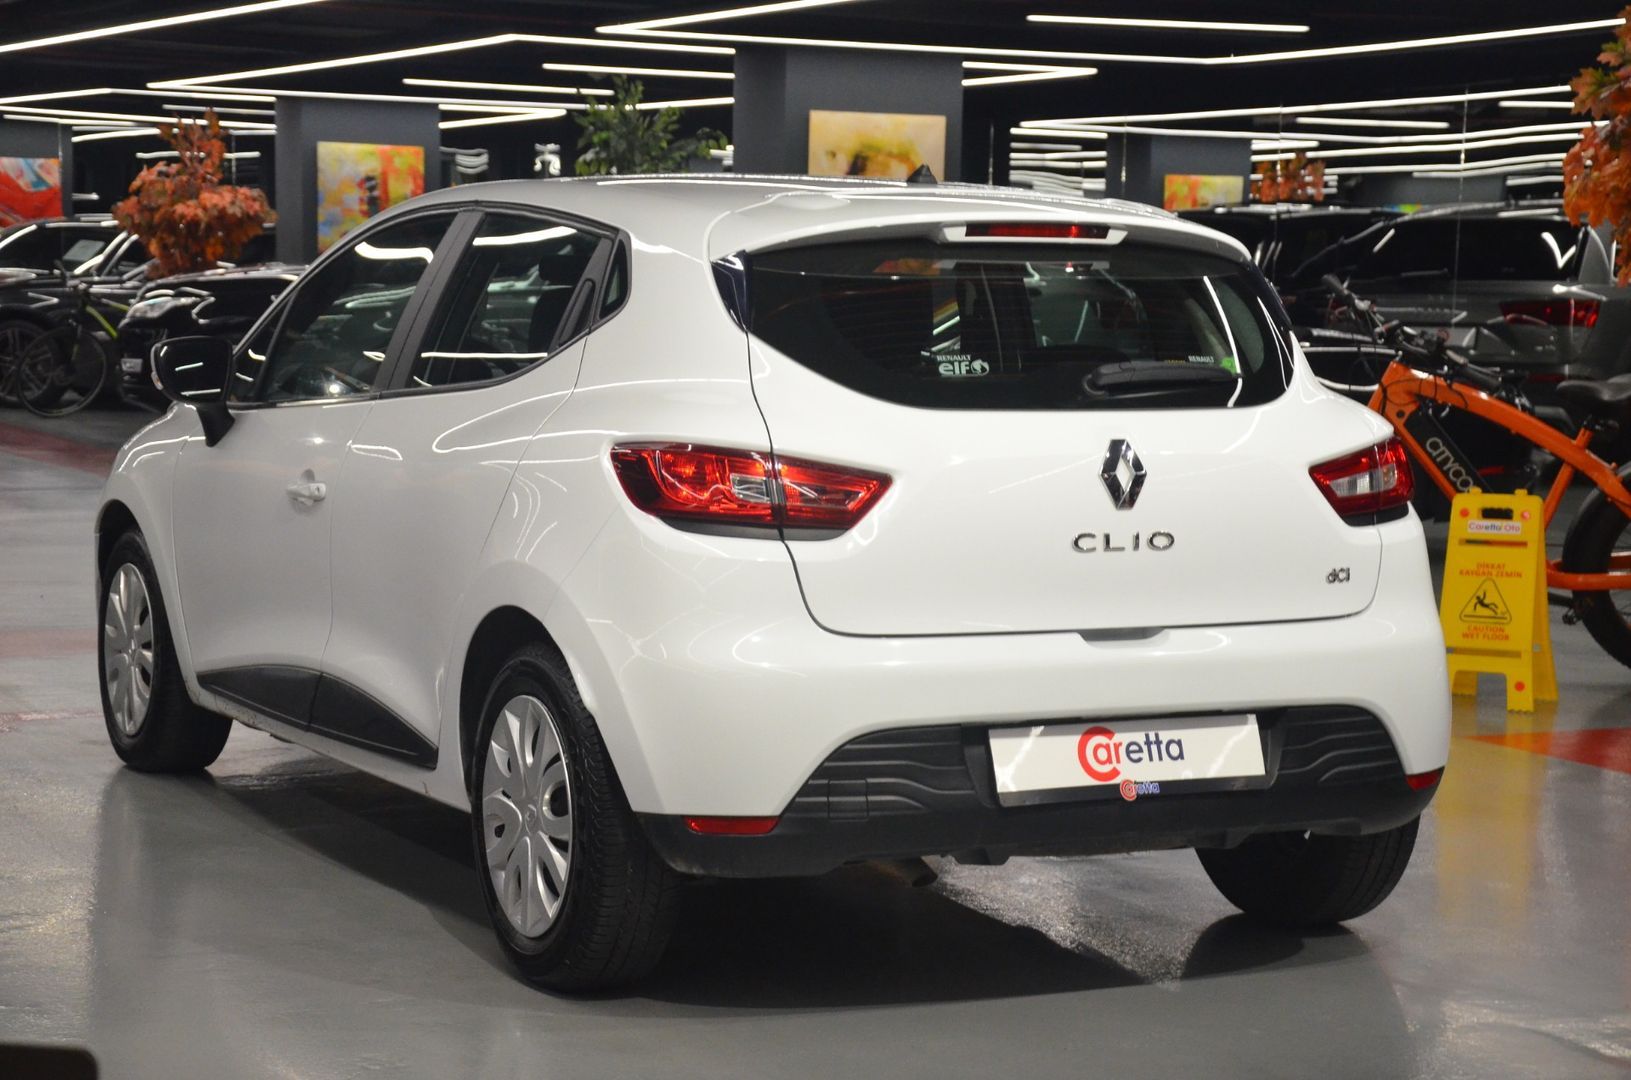 2016 Bakımlı,Clio 1.5 dCi  Joy-5